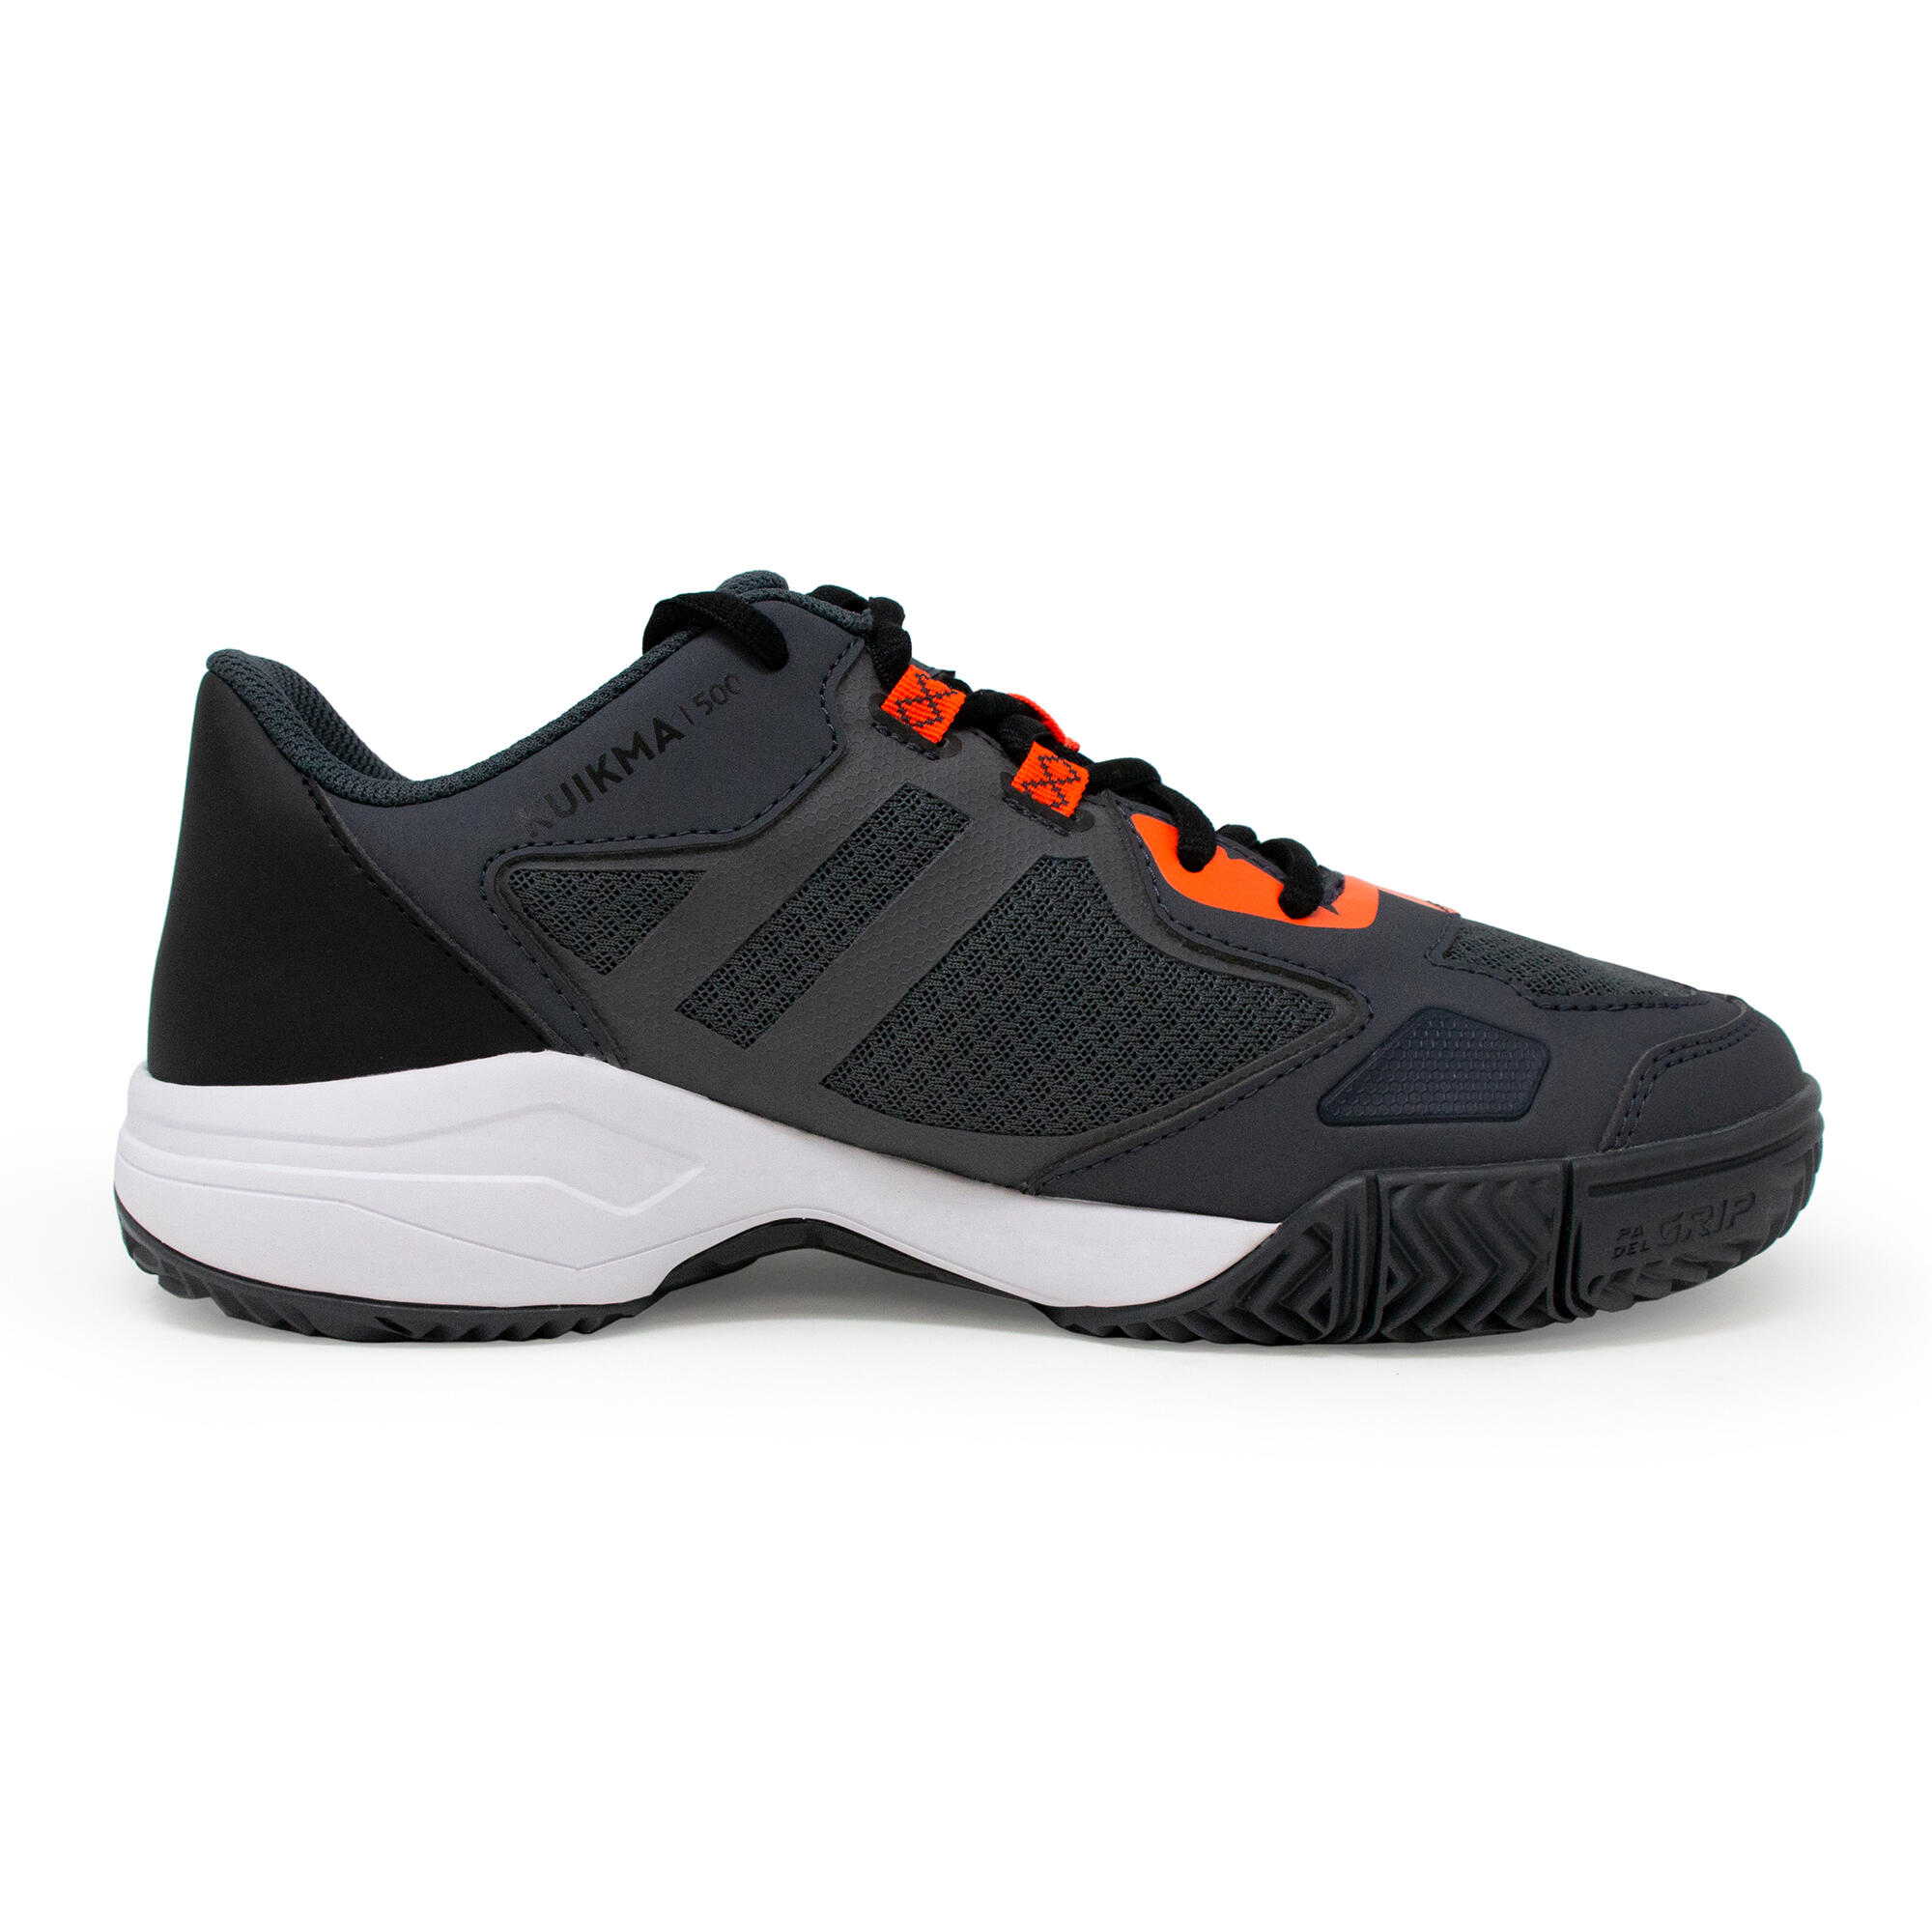 Men's Padel Shoes PS 500 - Grey/Black 2/9